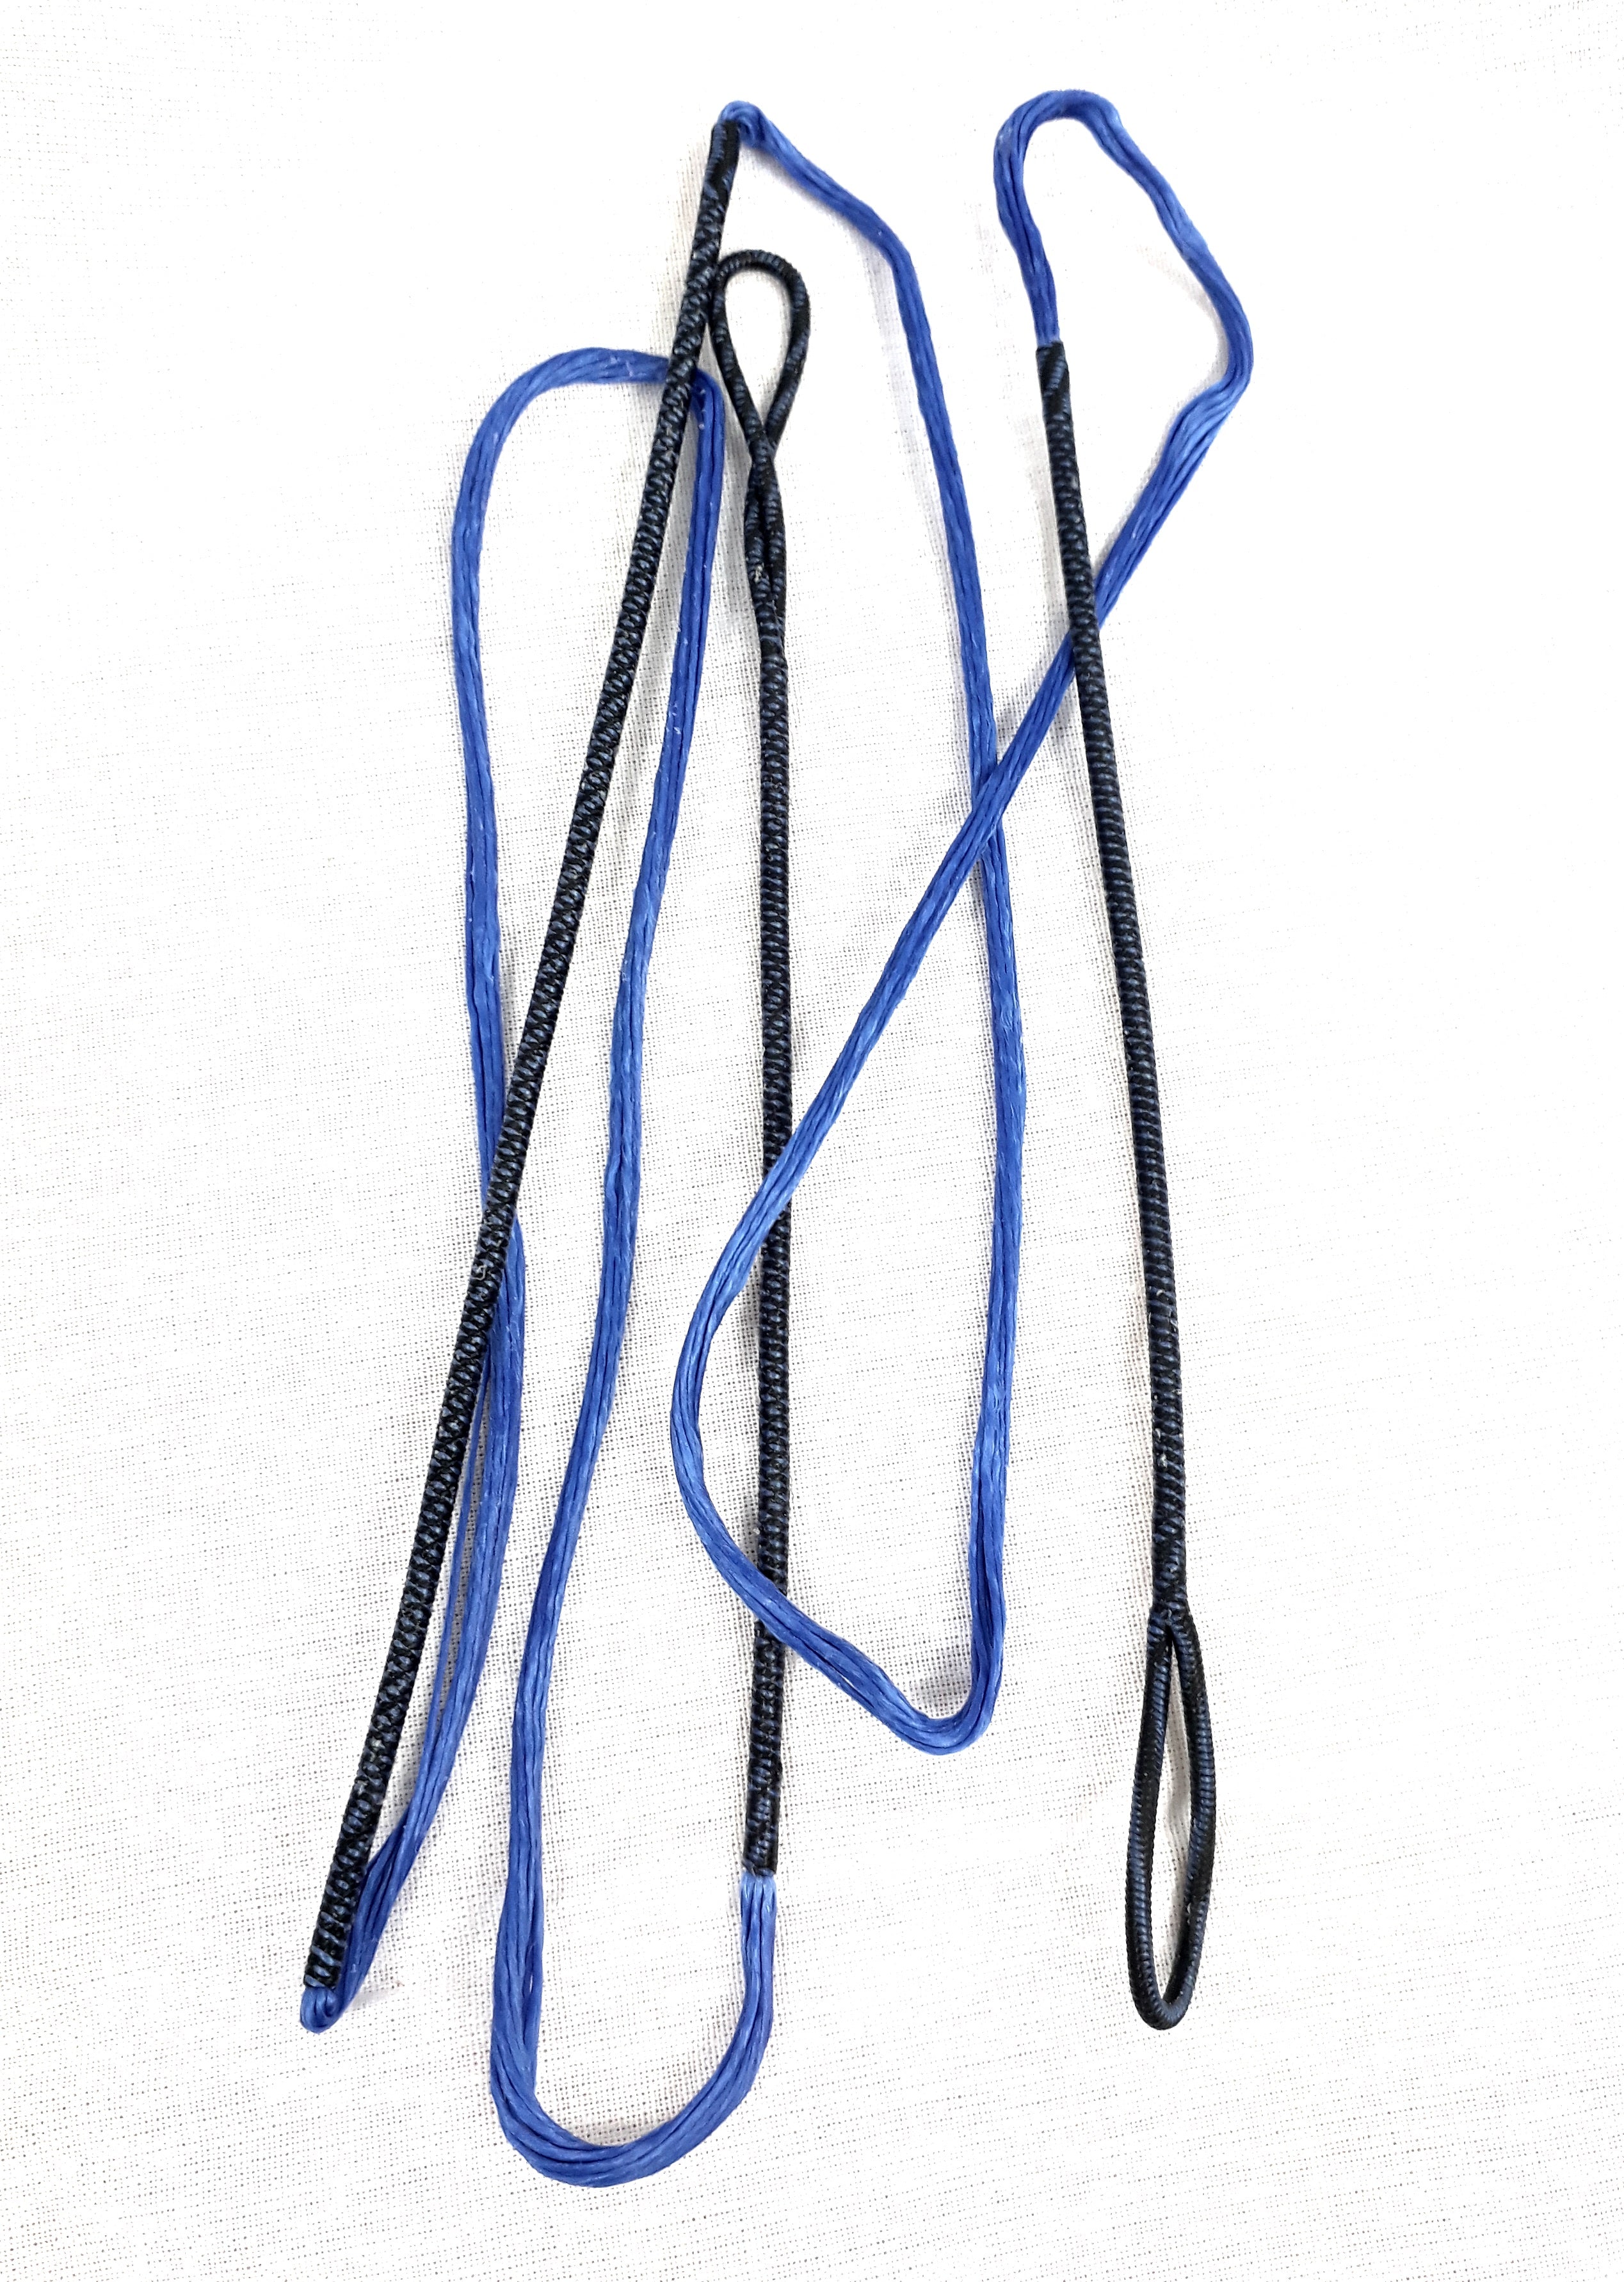 Dacronsehne Stringflex blau f. Recurvebogen, 48-72 Zoll in 10-12 Strang